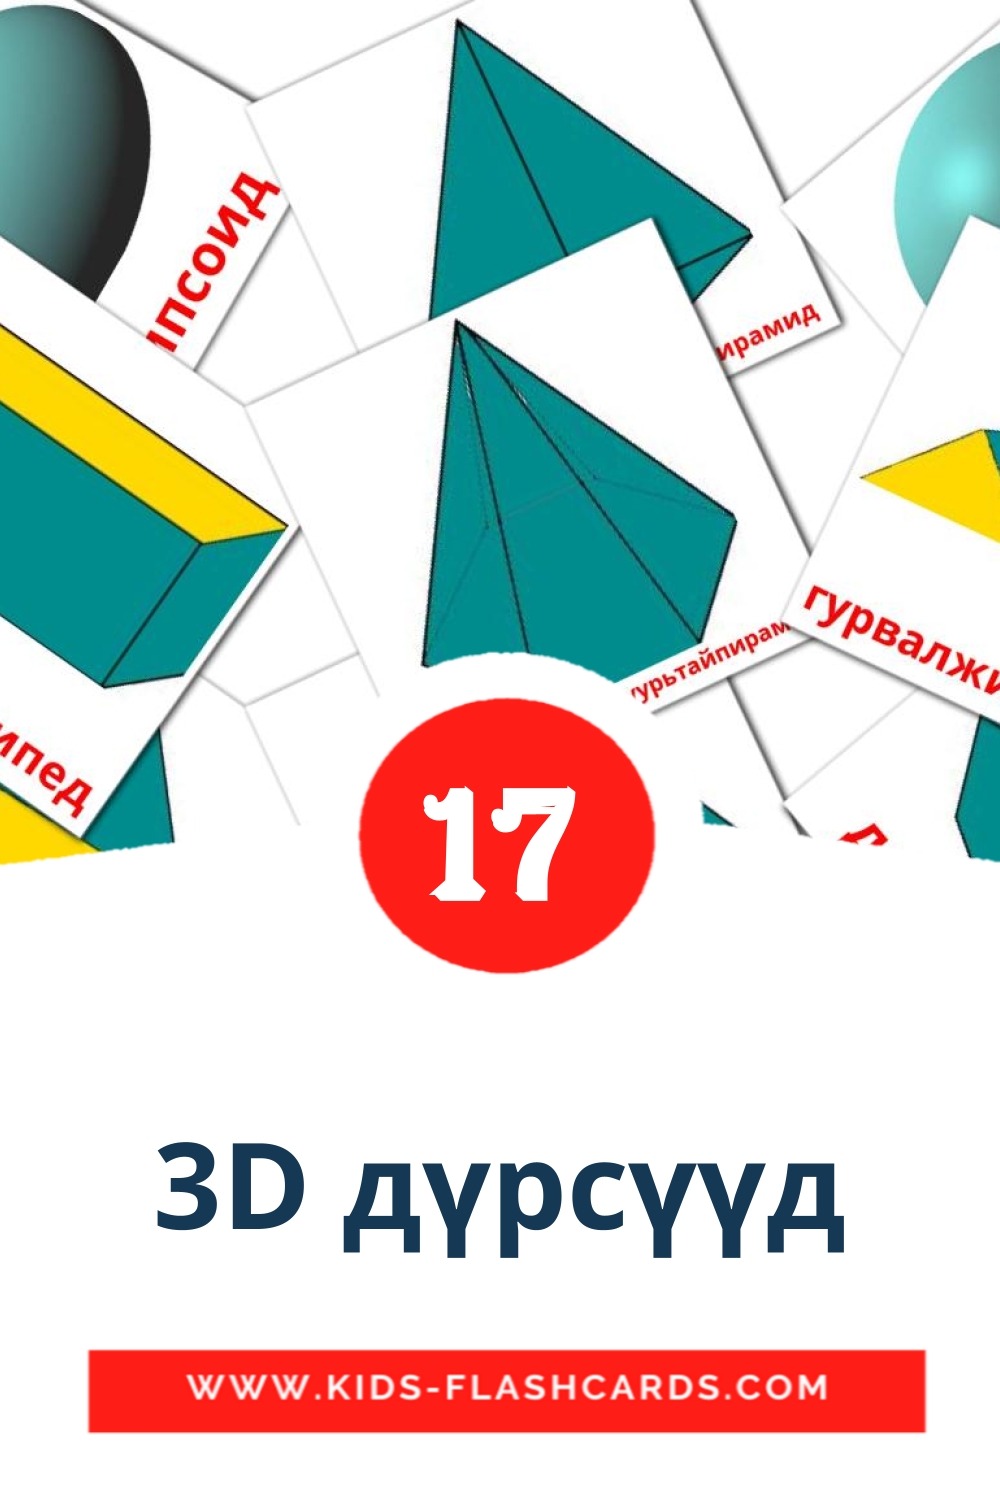 17 tarjetas didacticas de 3D дүрсүүд para el jardín de infancia en mongol